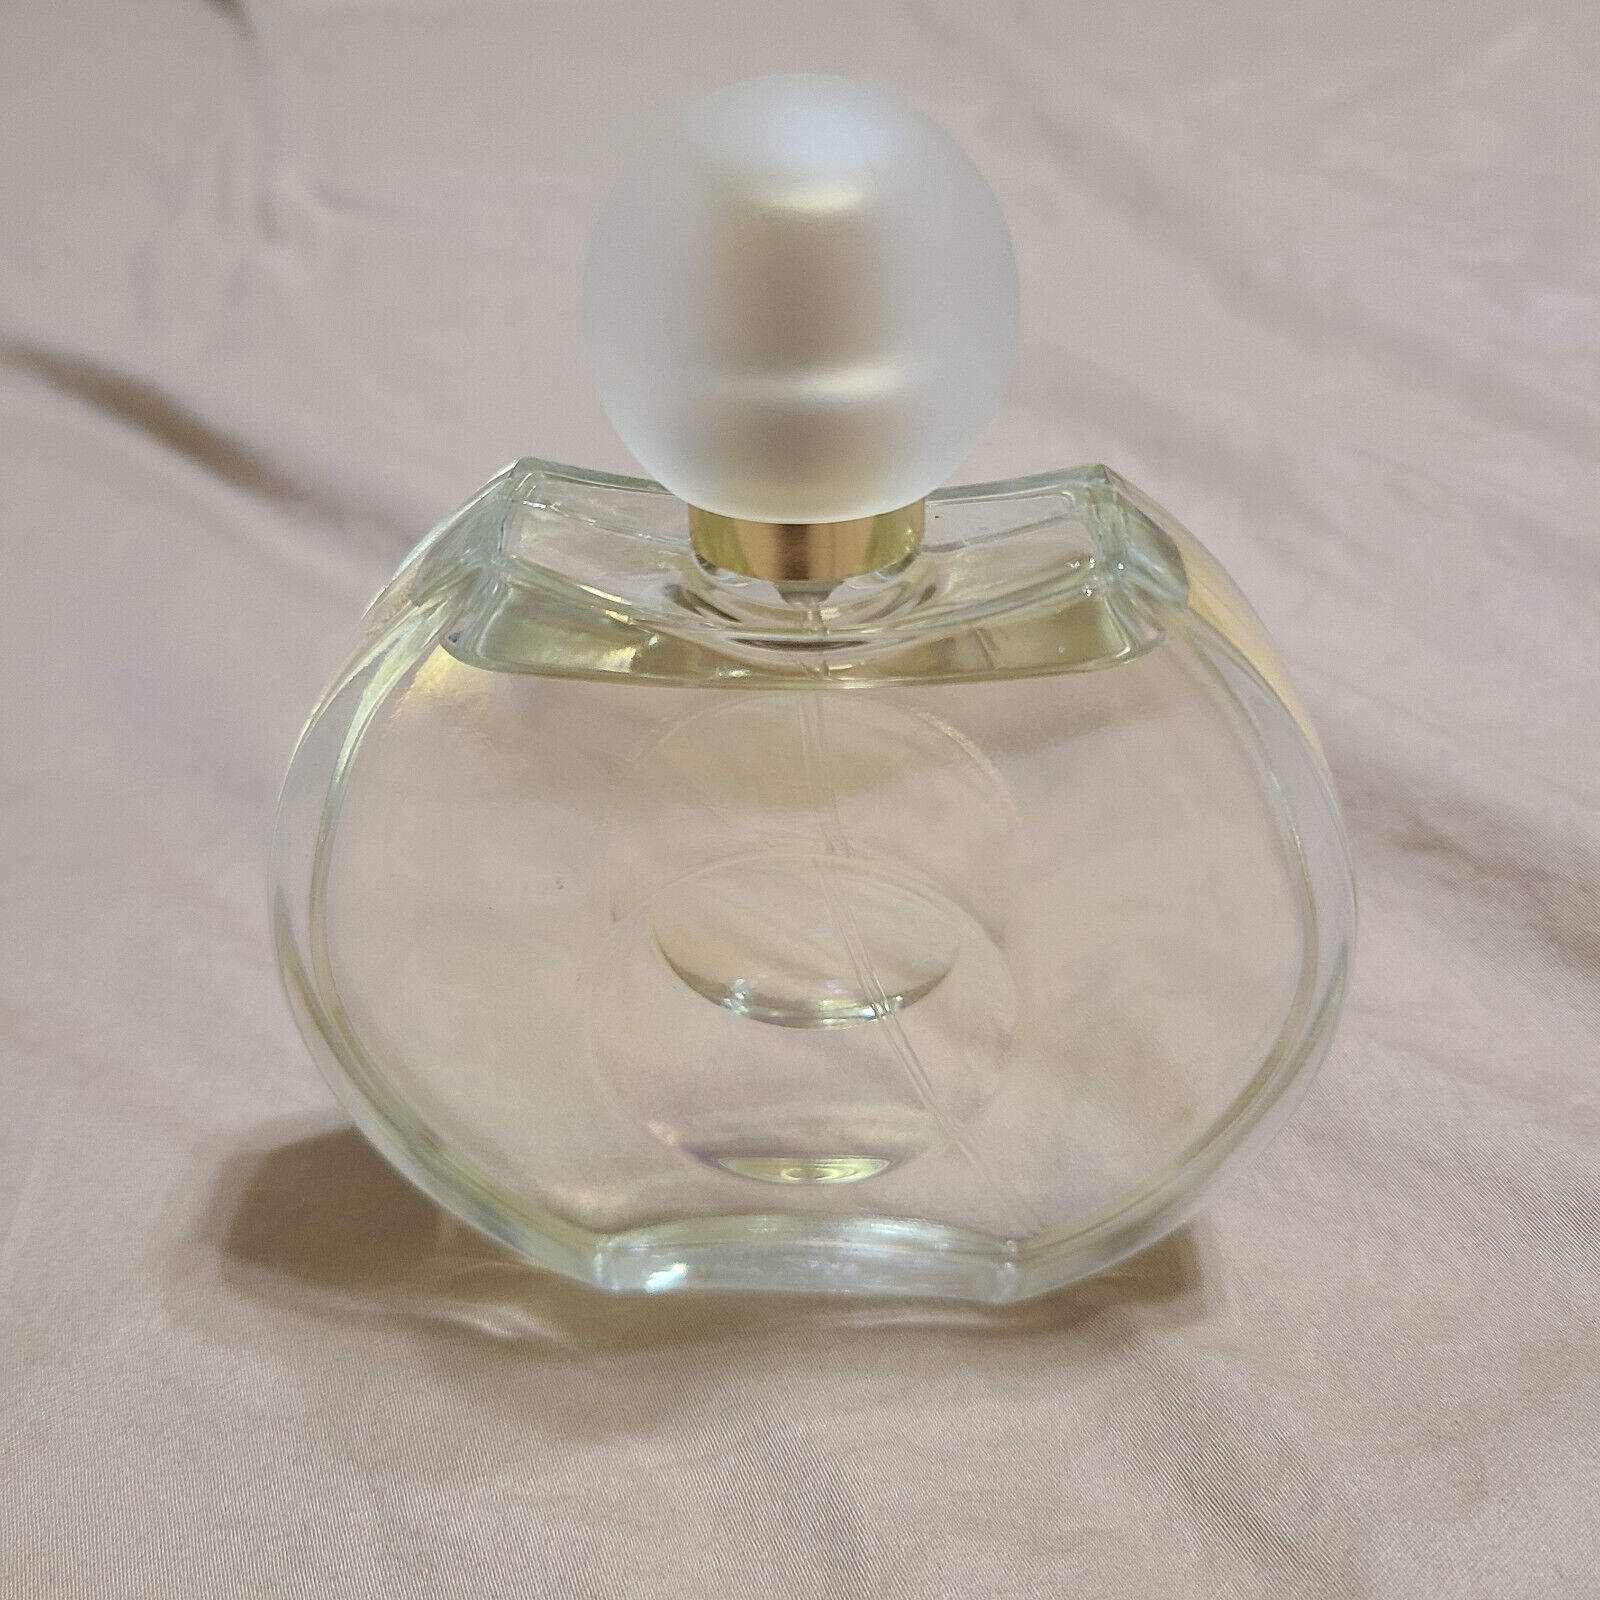 Forever Elizabeth by Elizabeth Taylor Eau De Parfum Spray - 3.3 oz/100 ml, used